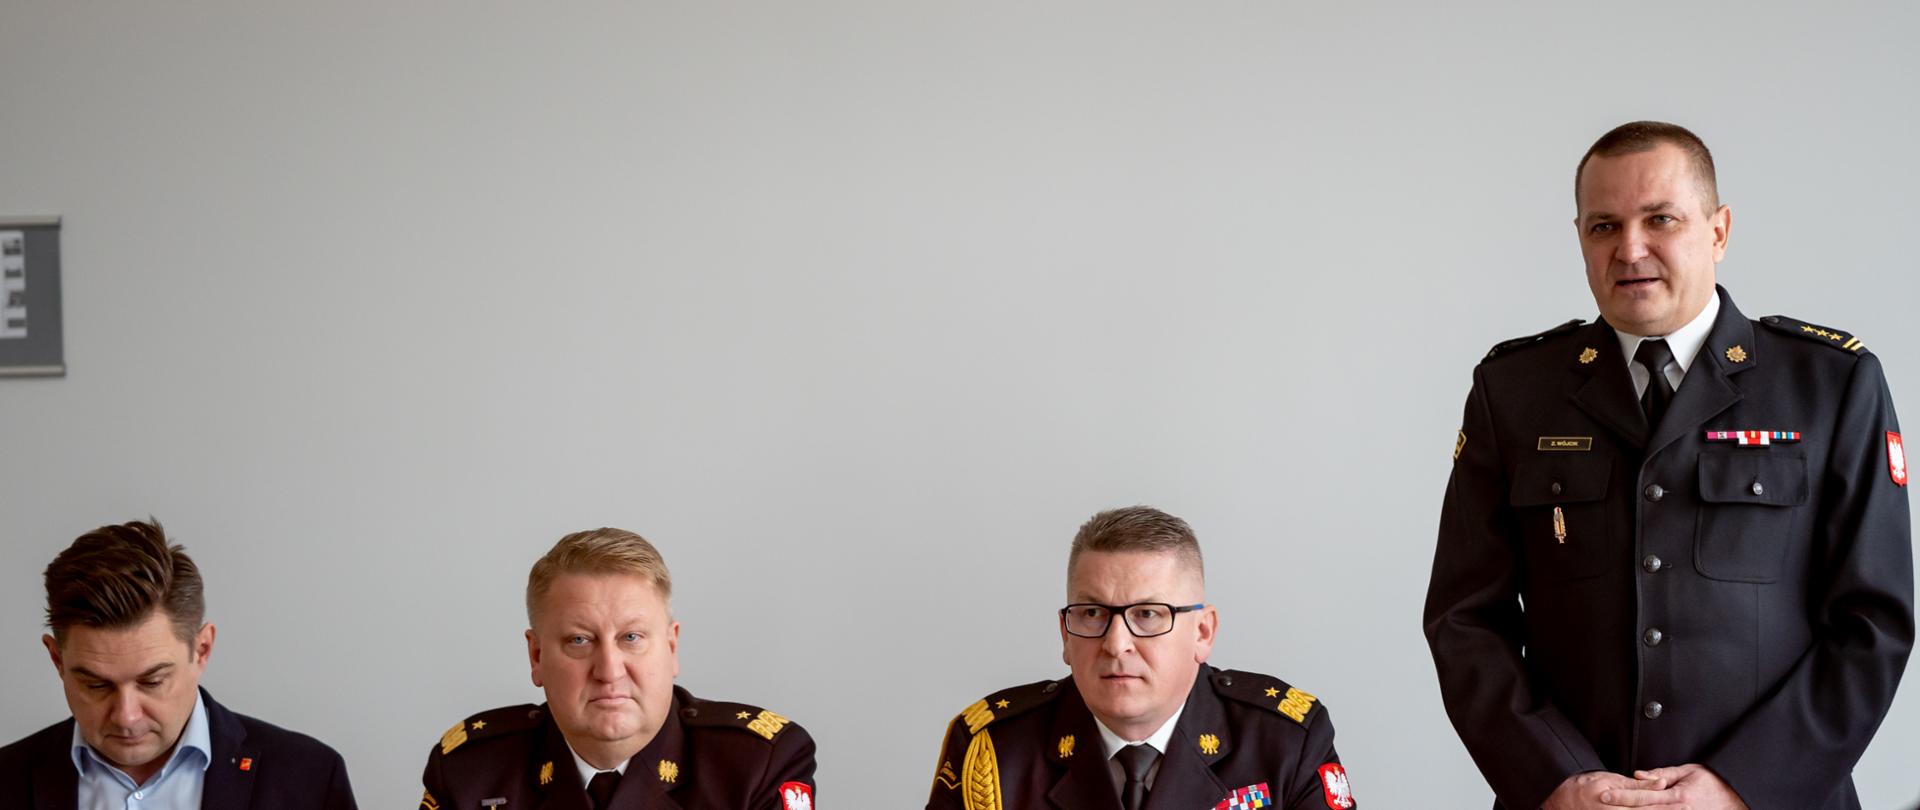 łódzki komendant wojewódzki PSP w Łodzi, zastępca komendanta głównego PSP w Łodzi siedzący za stołem, obok stojący komendant miejski PSP w Łodzi